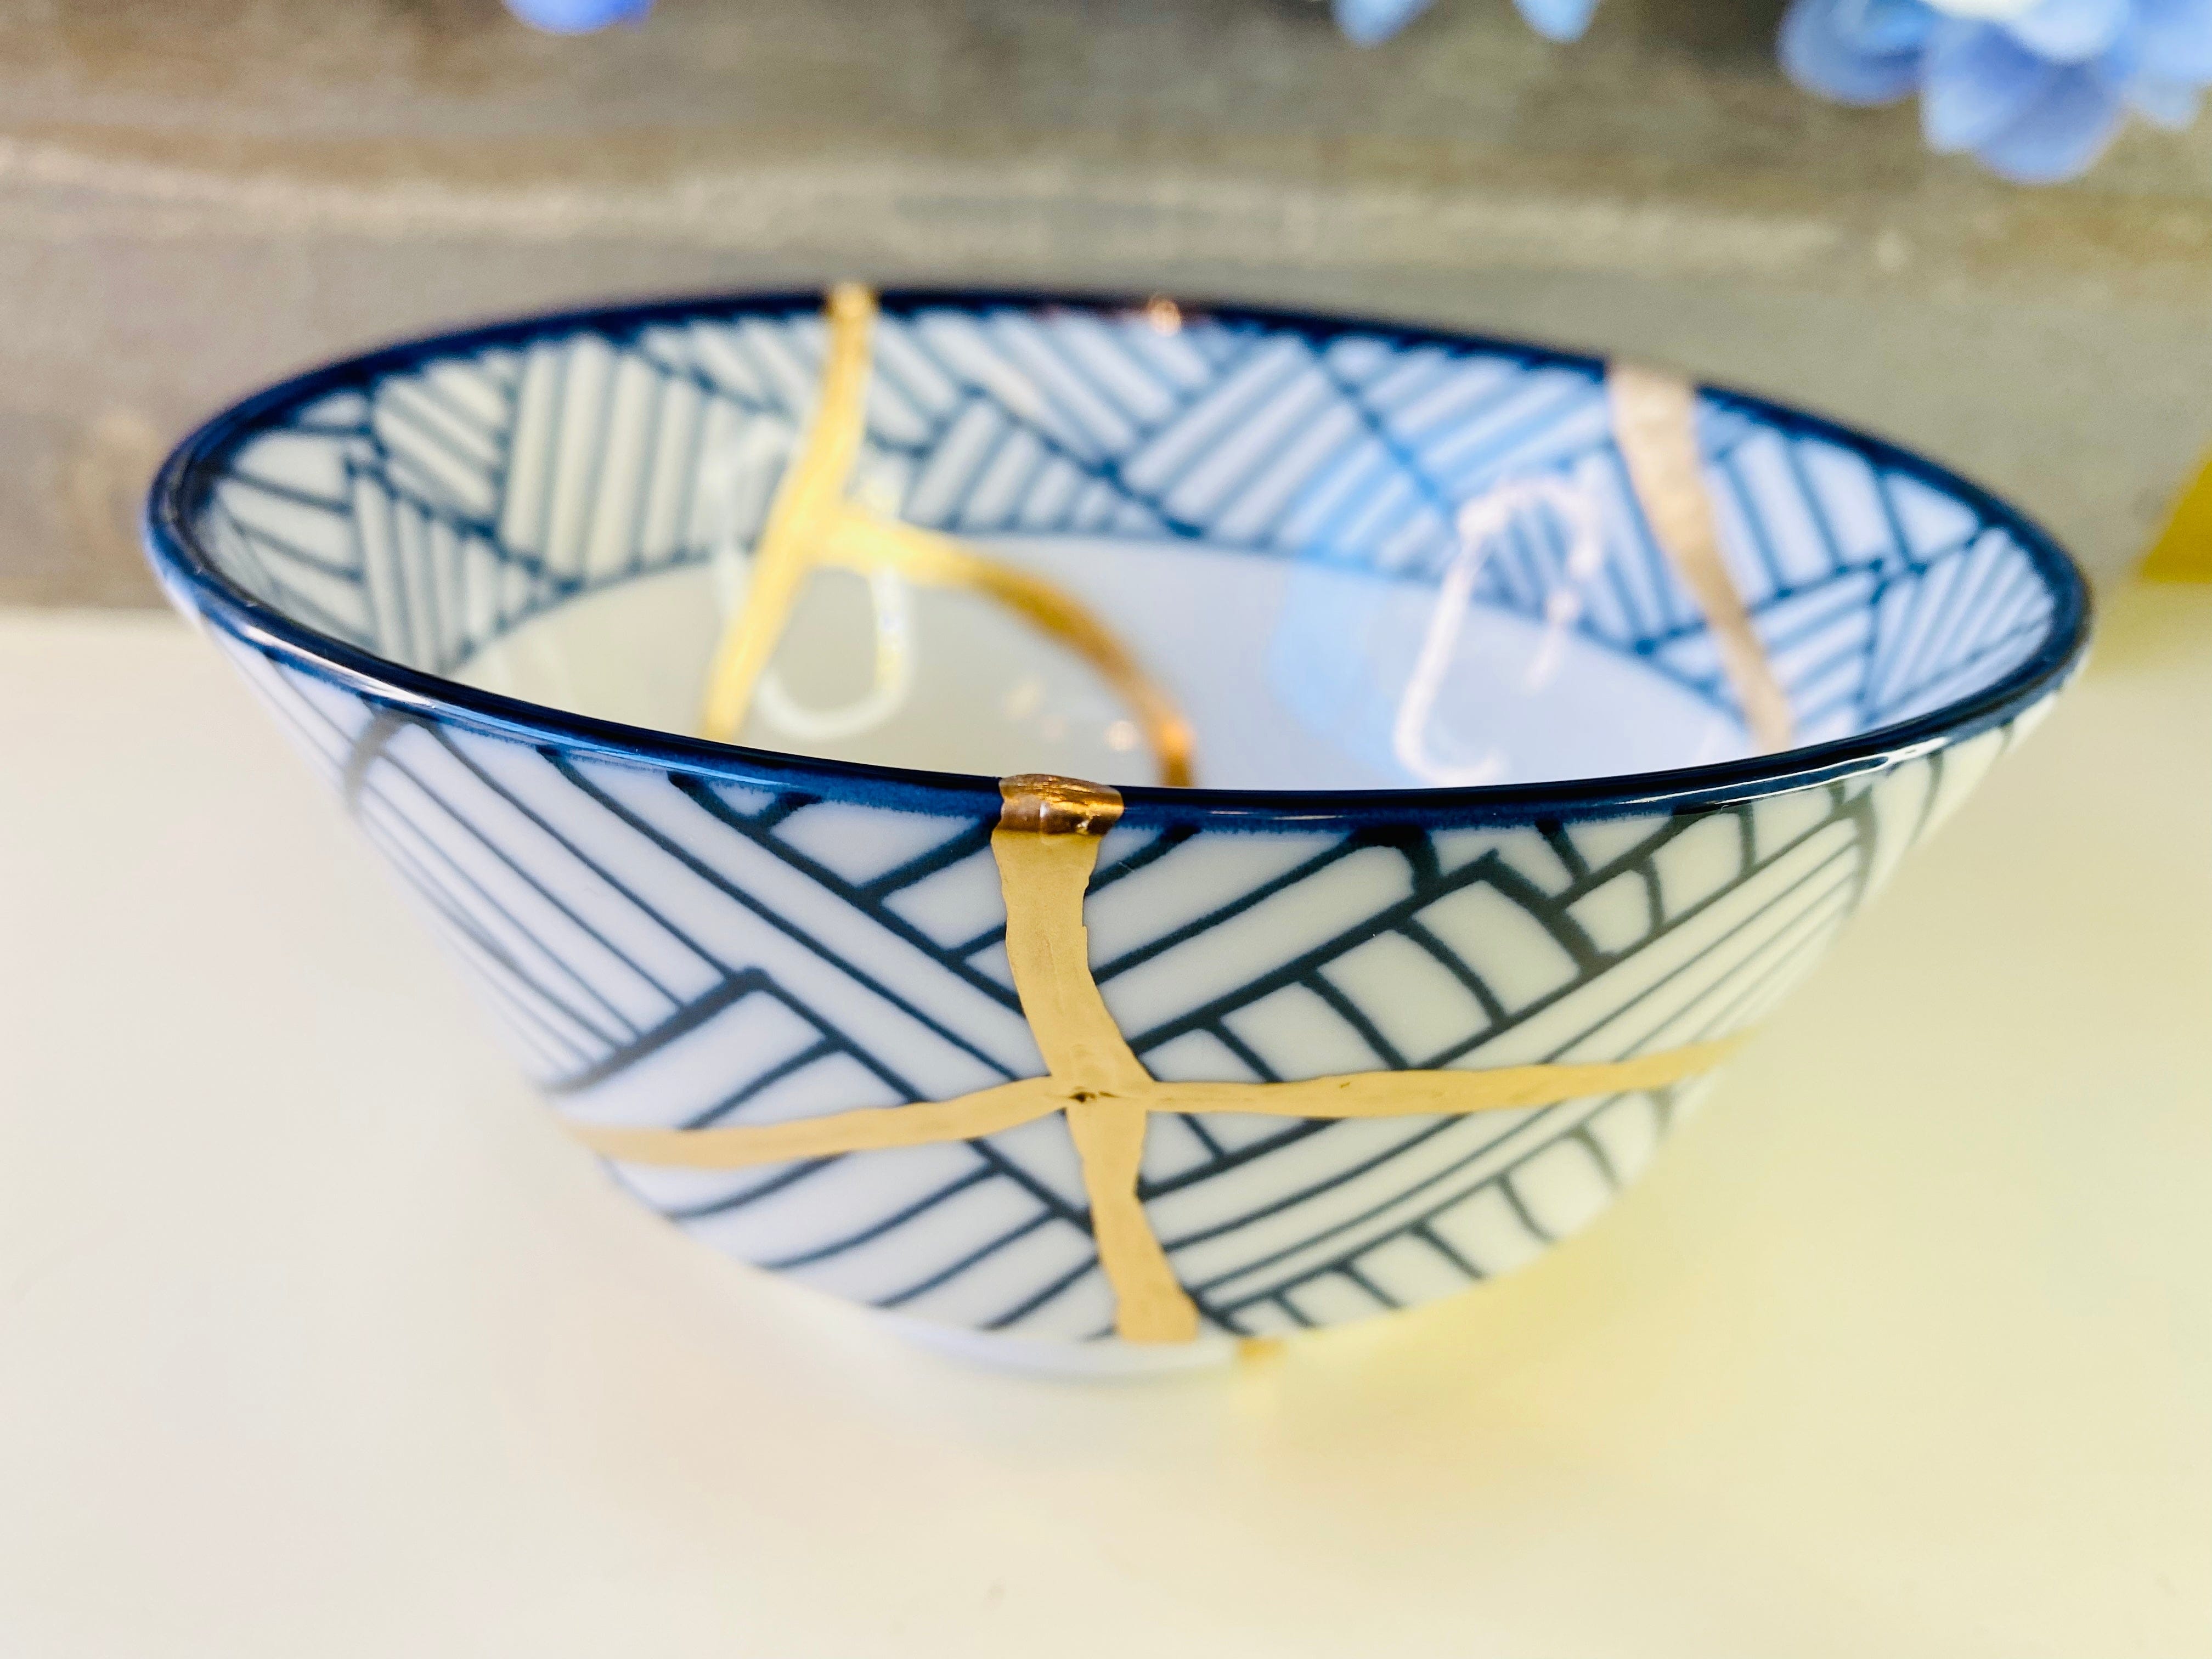 Kintsugi Weave Print White Bowl